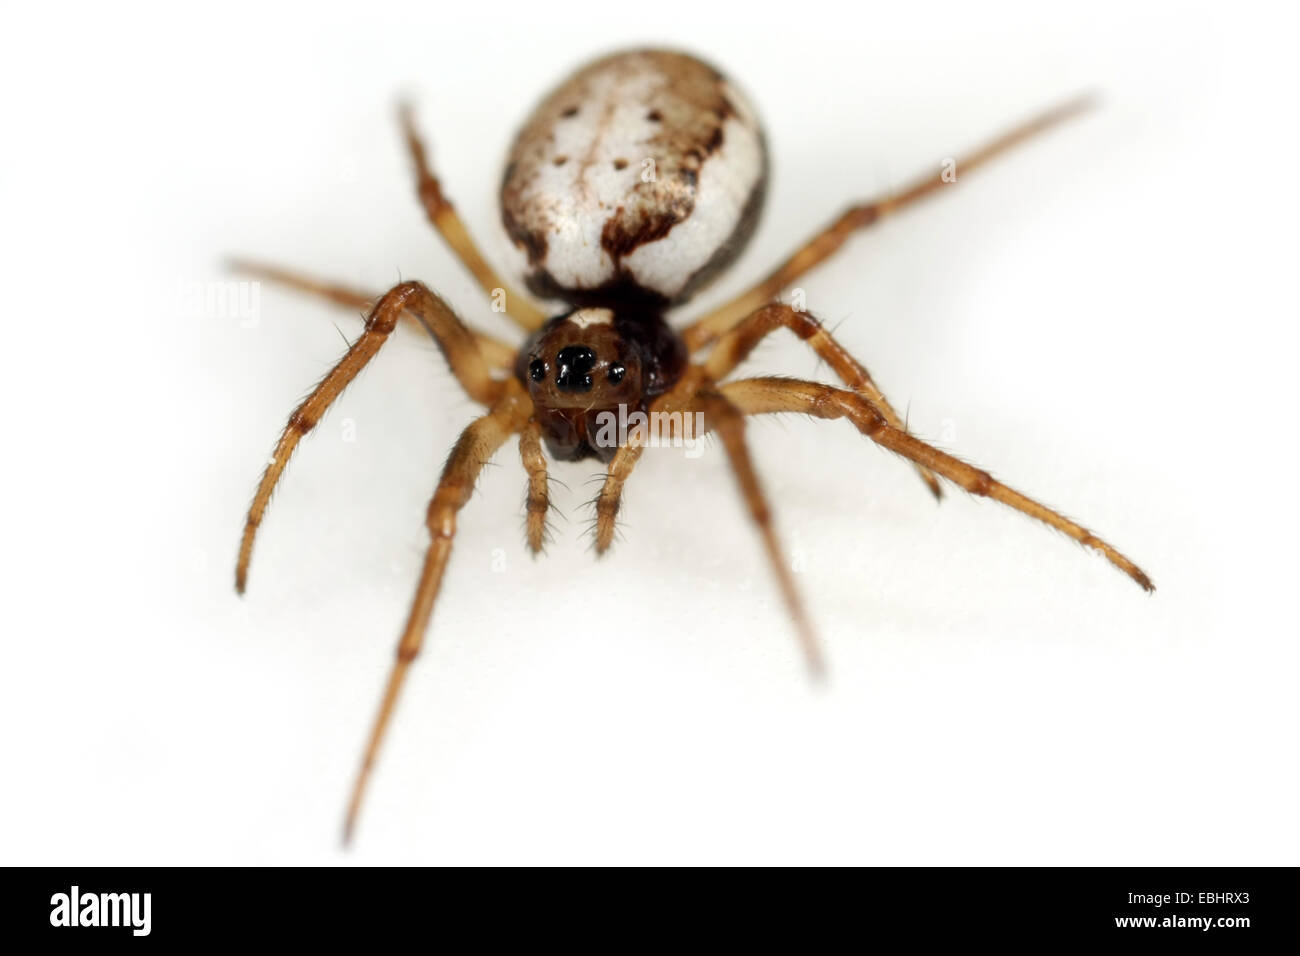 Una hembra de araña (Hypsosinga orbweaving albovittata) sobre fondo blanco. Orbweaving arañas son parte de la familia Araneidae. Foto de stock